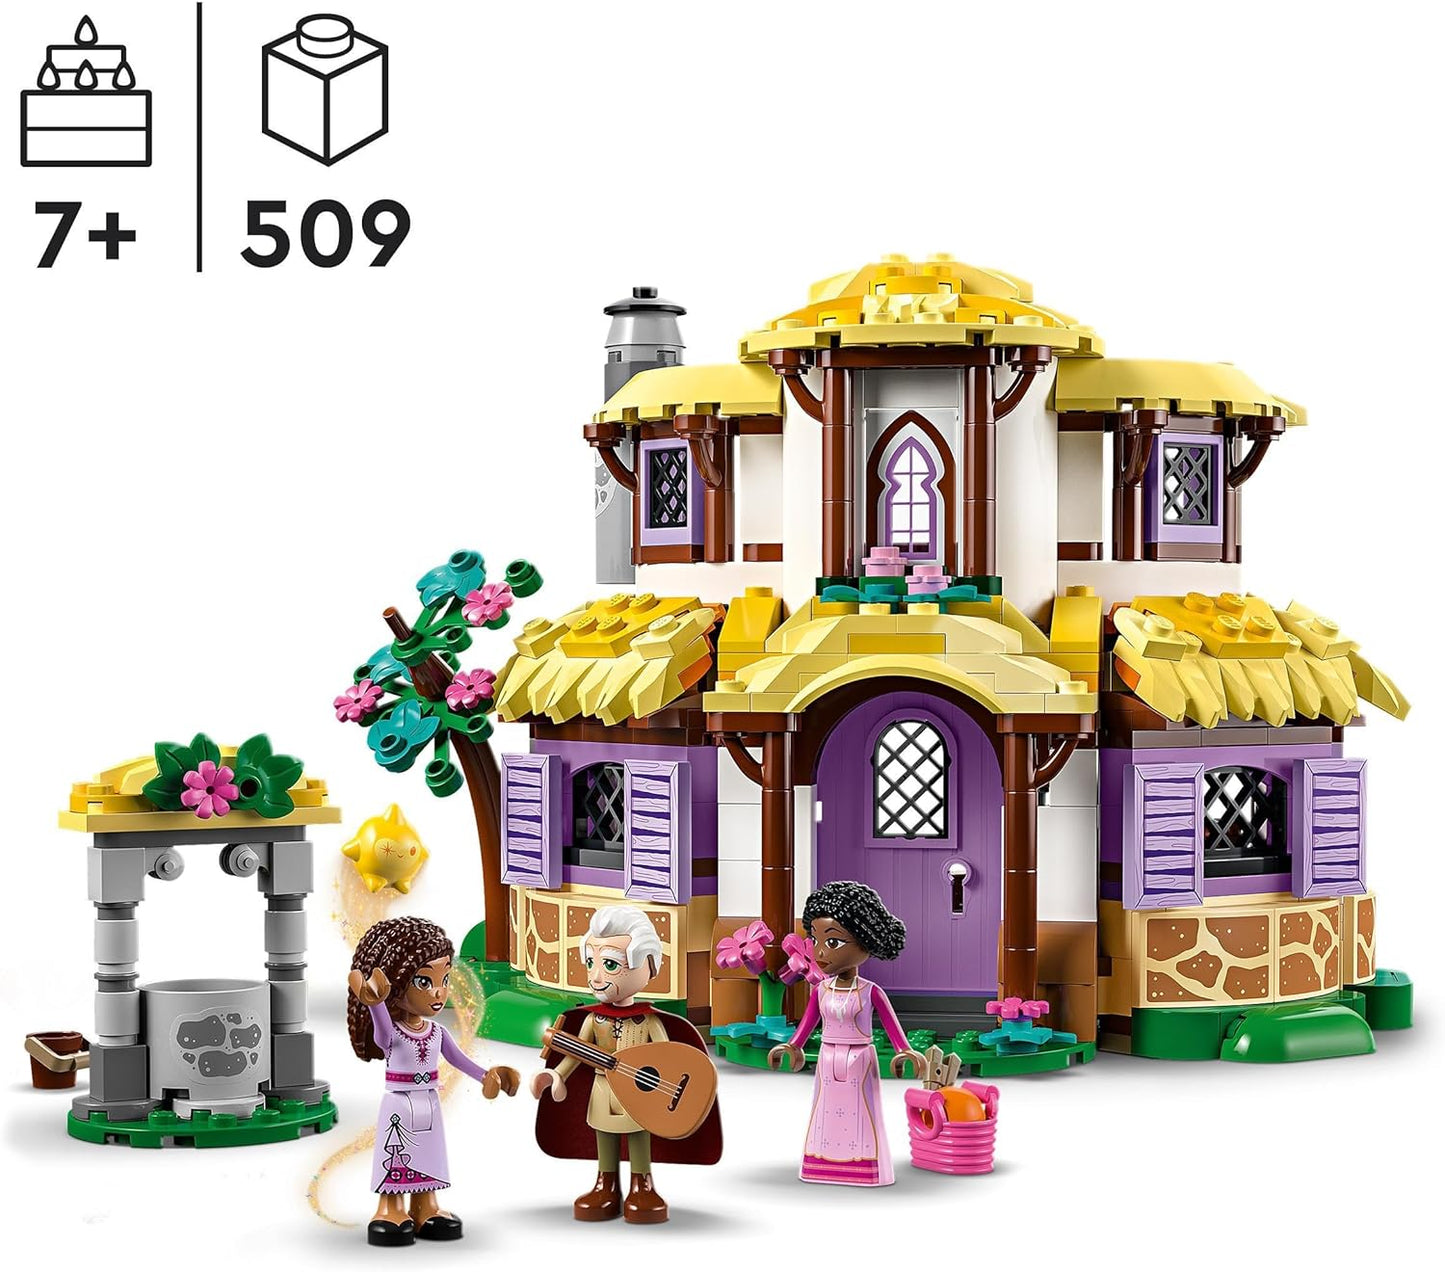 LEGO 43231 Disney Wish Asha's Cottage Playset, abrindo Toy Dollshouse do filme Wish com minibonecas Asha, Sakina e Sabino e figura de estrela, ideia para crianças, meninas e meninos